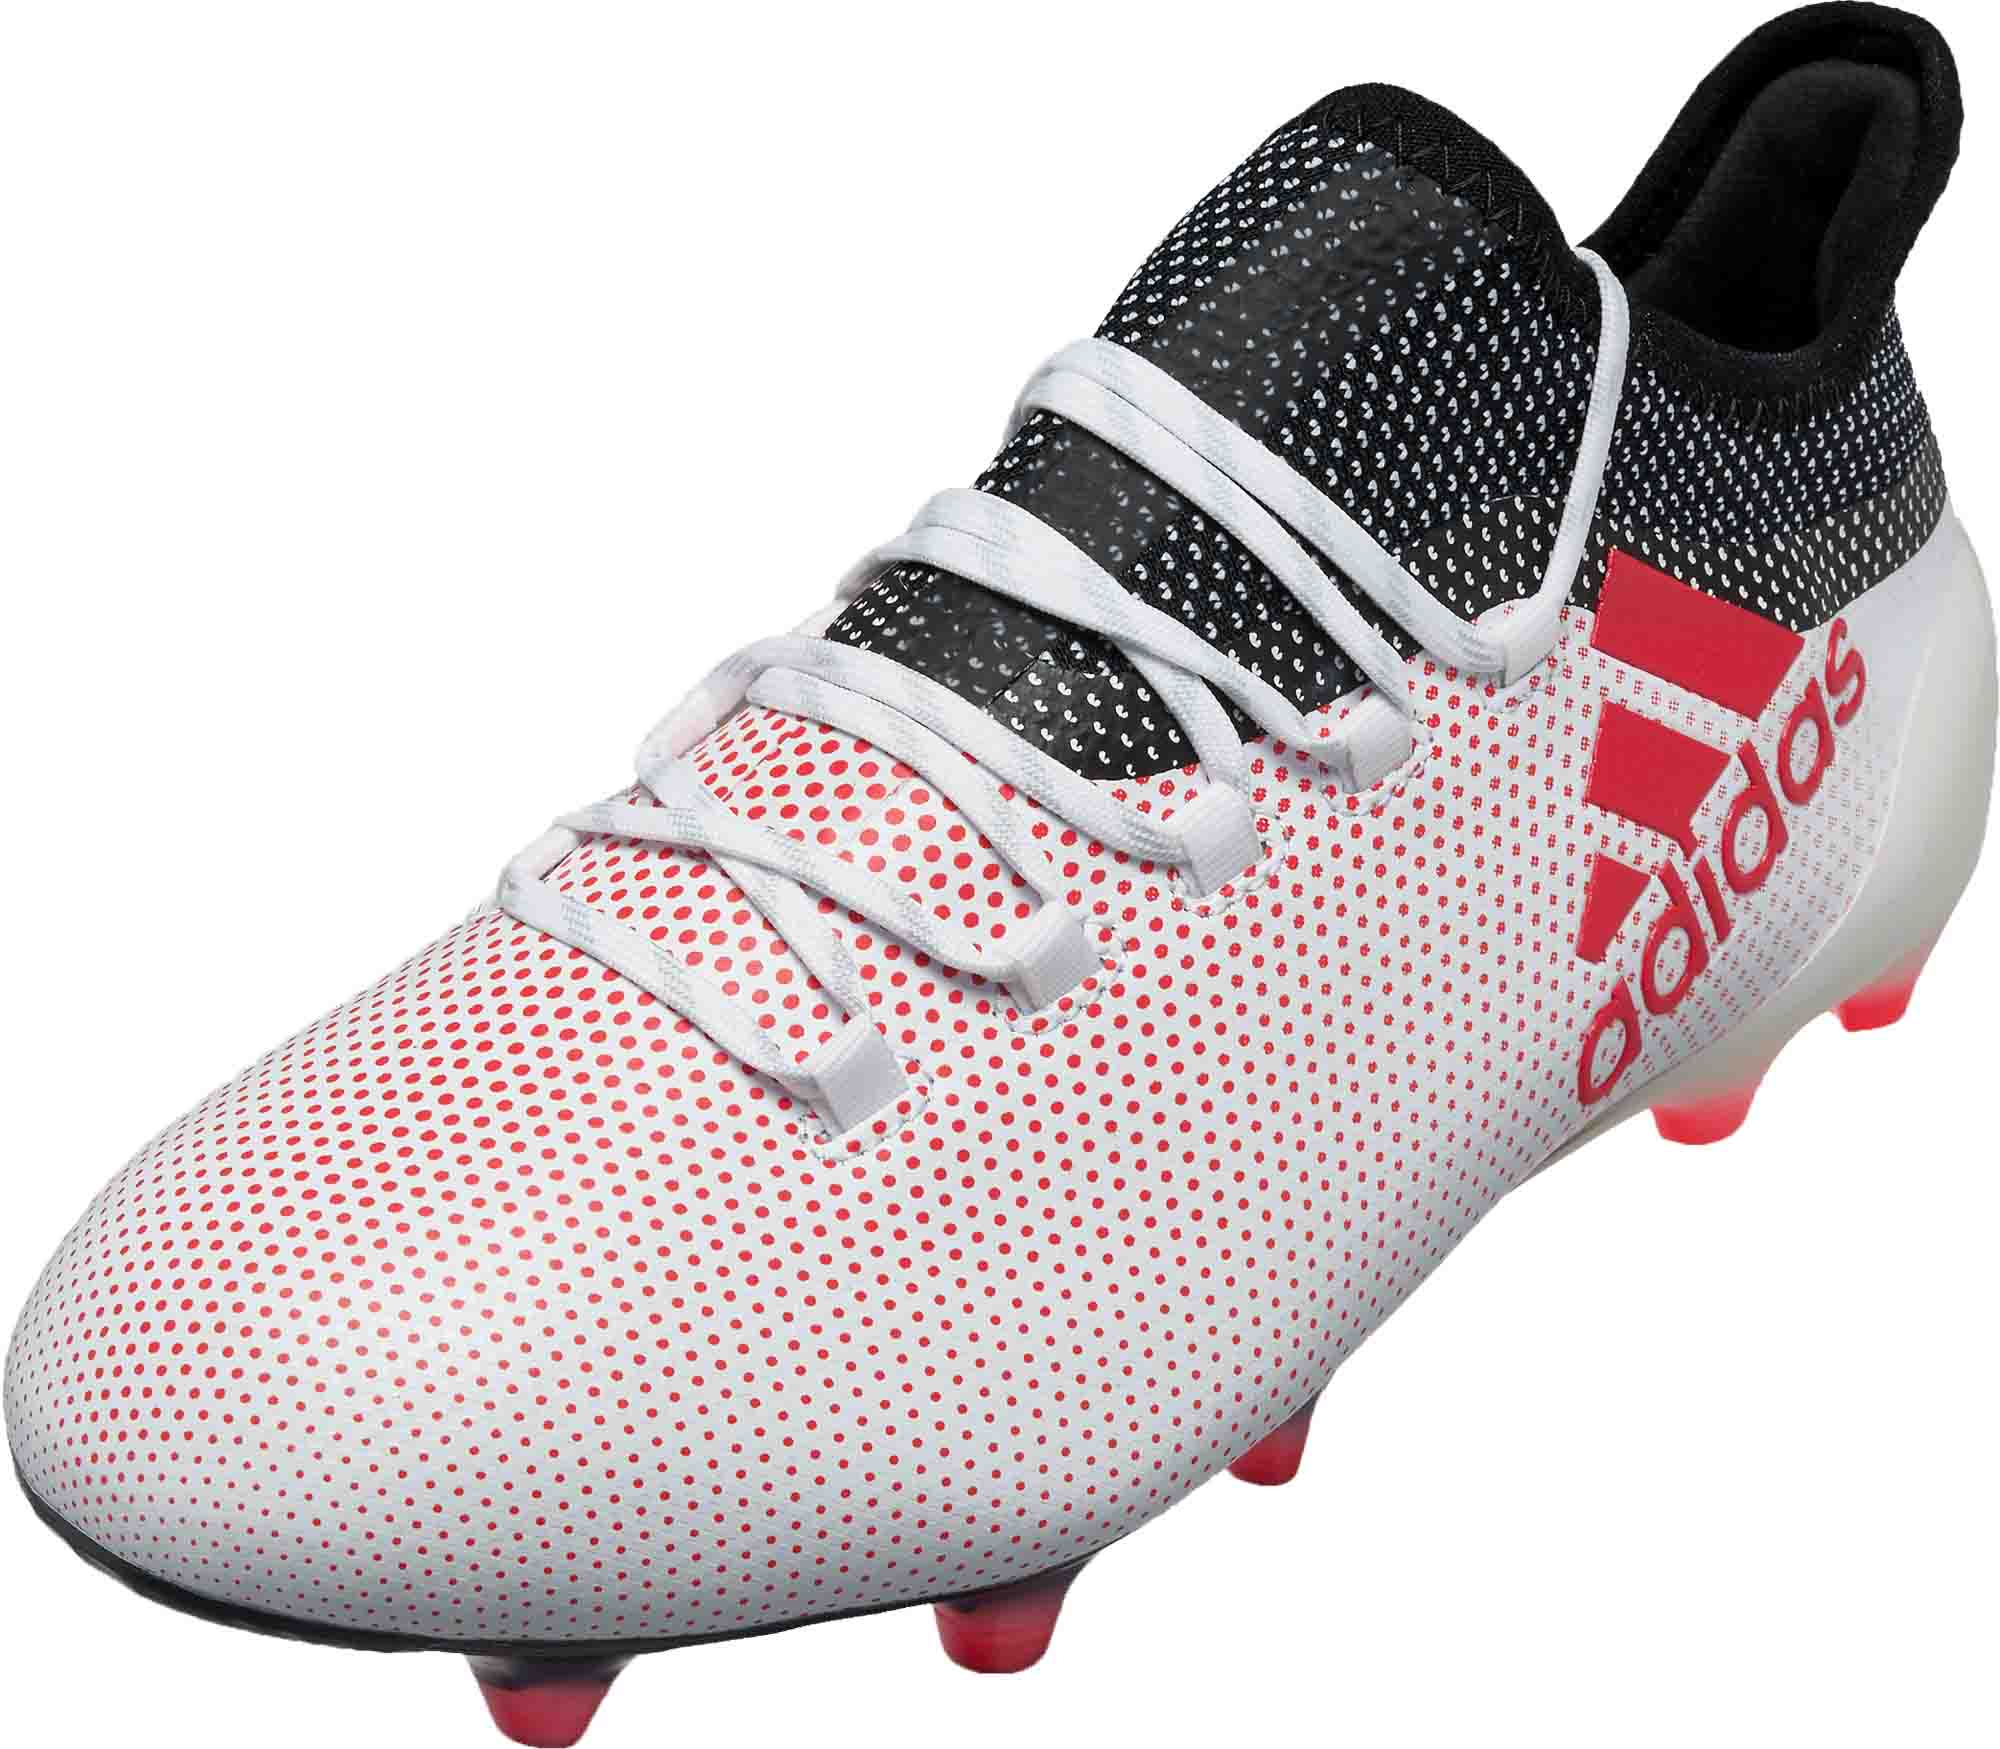 Adidas X 17 1 Fg Grey Real Coral Soccer Master